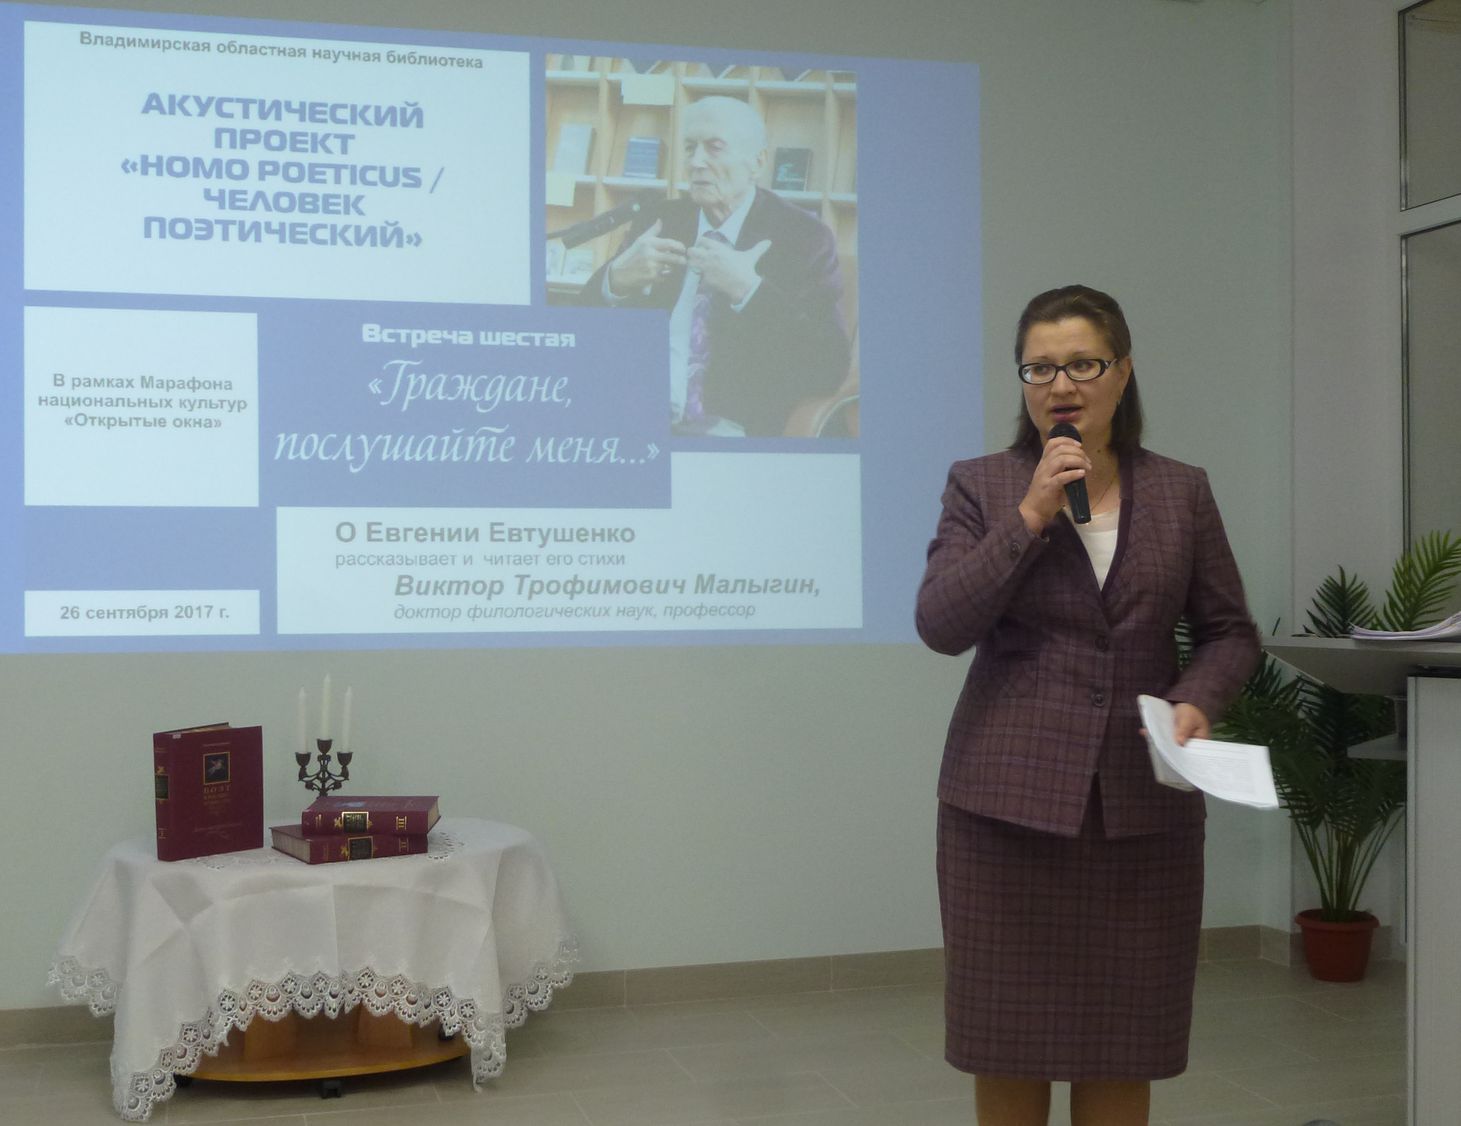 Елена Липатова выступает со вступительным словом о проекте